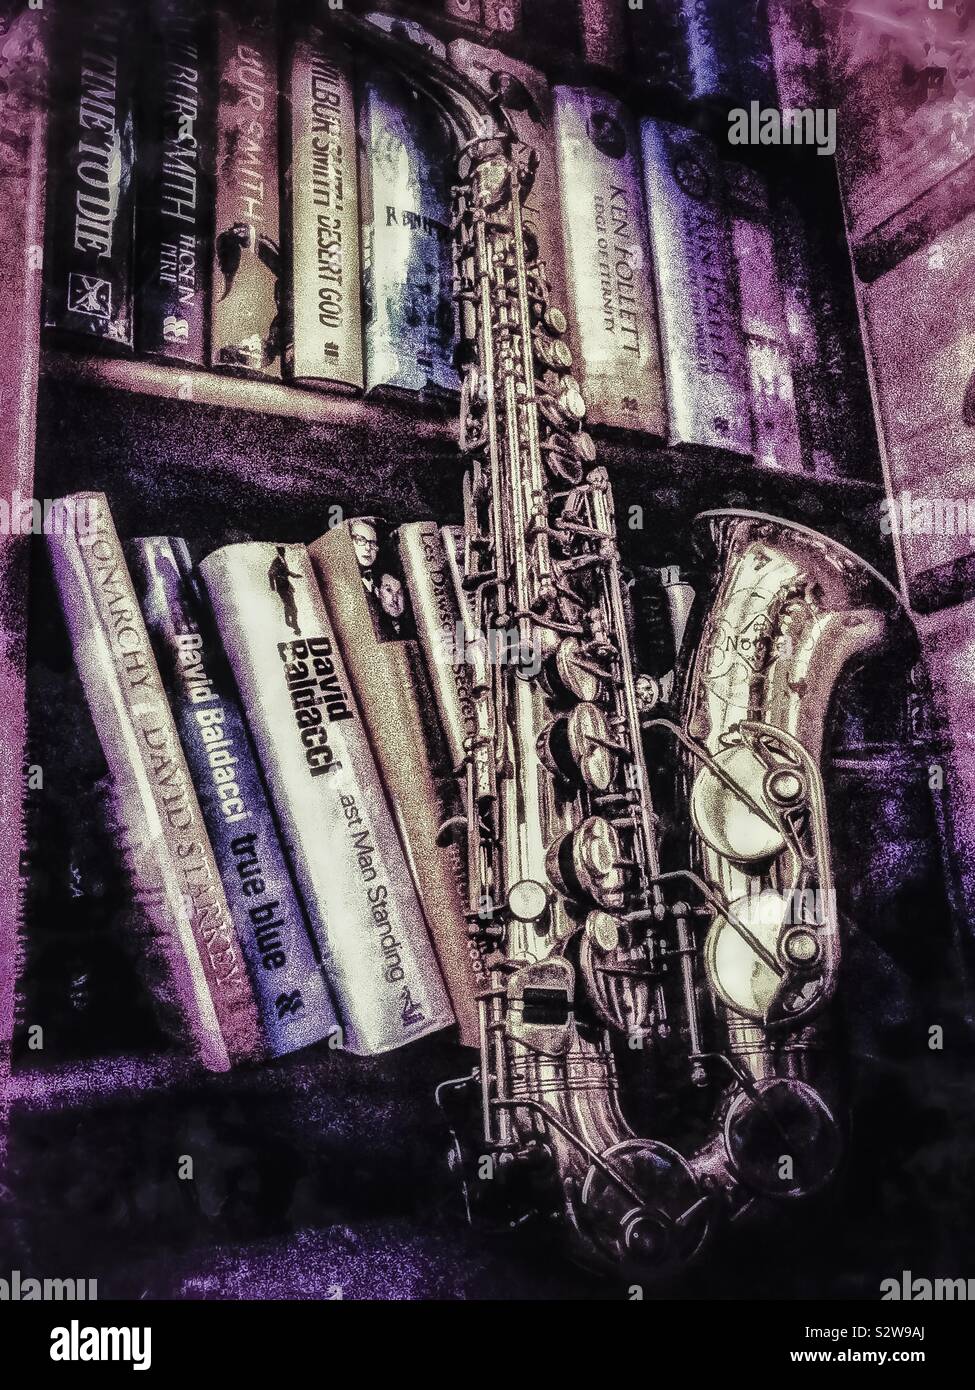 Saxophone Alto appuyé contre livre cas avec filtre grunge Banque D'Images